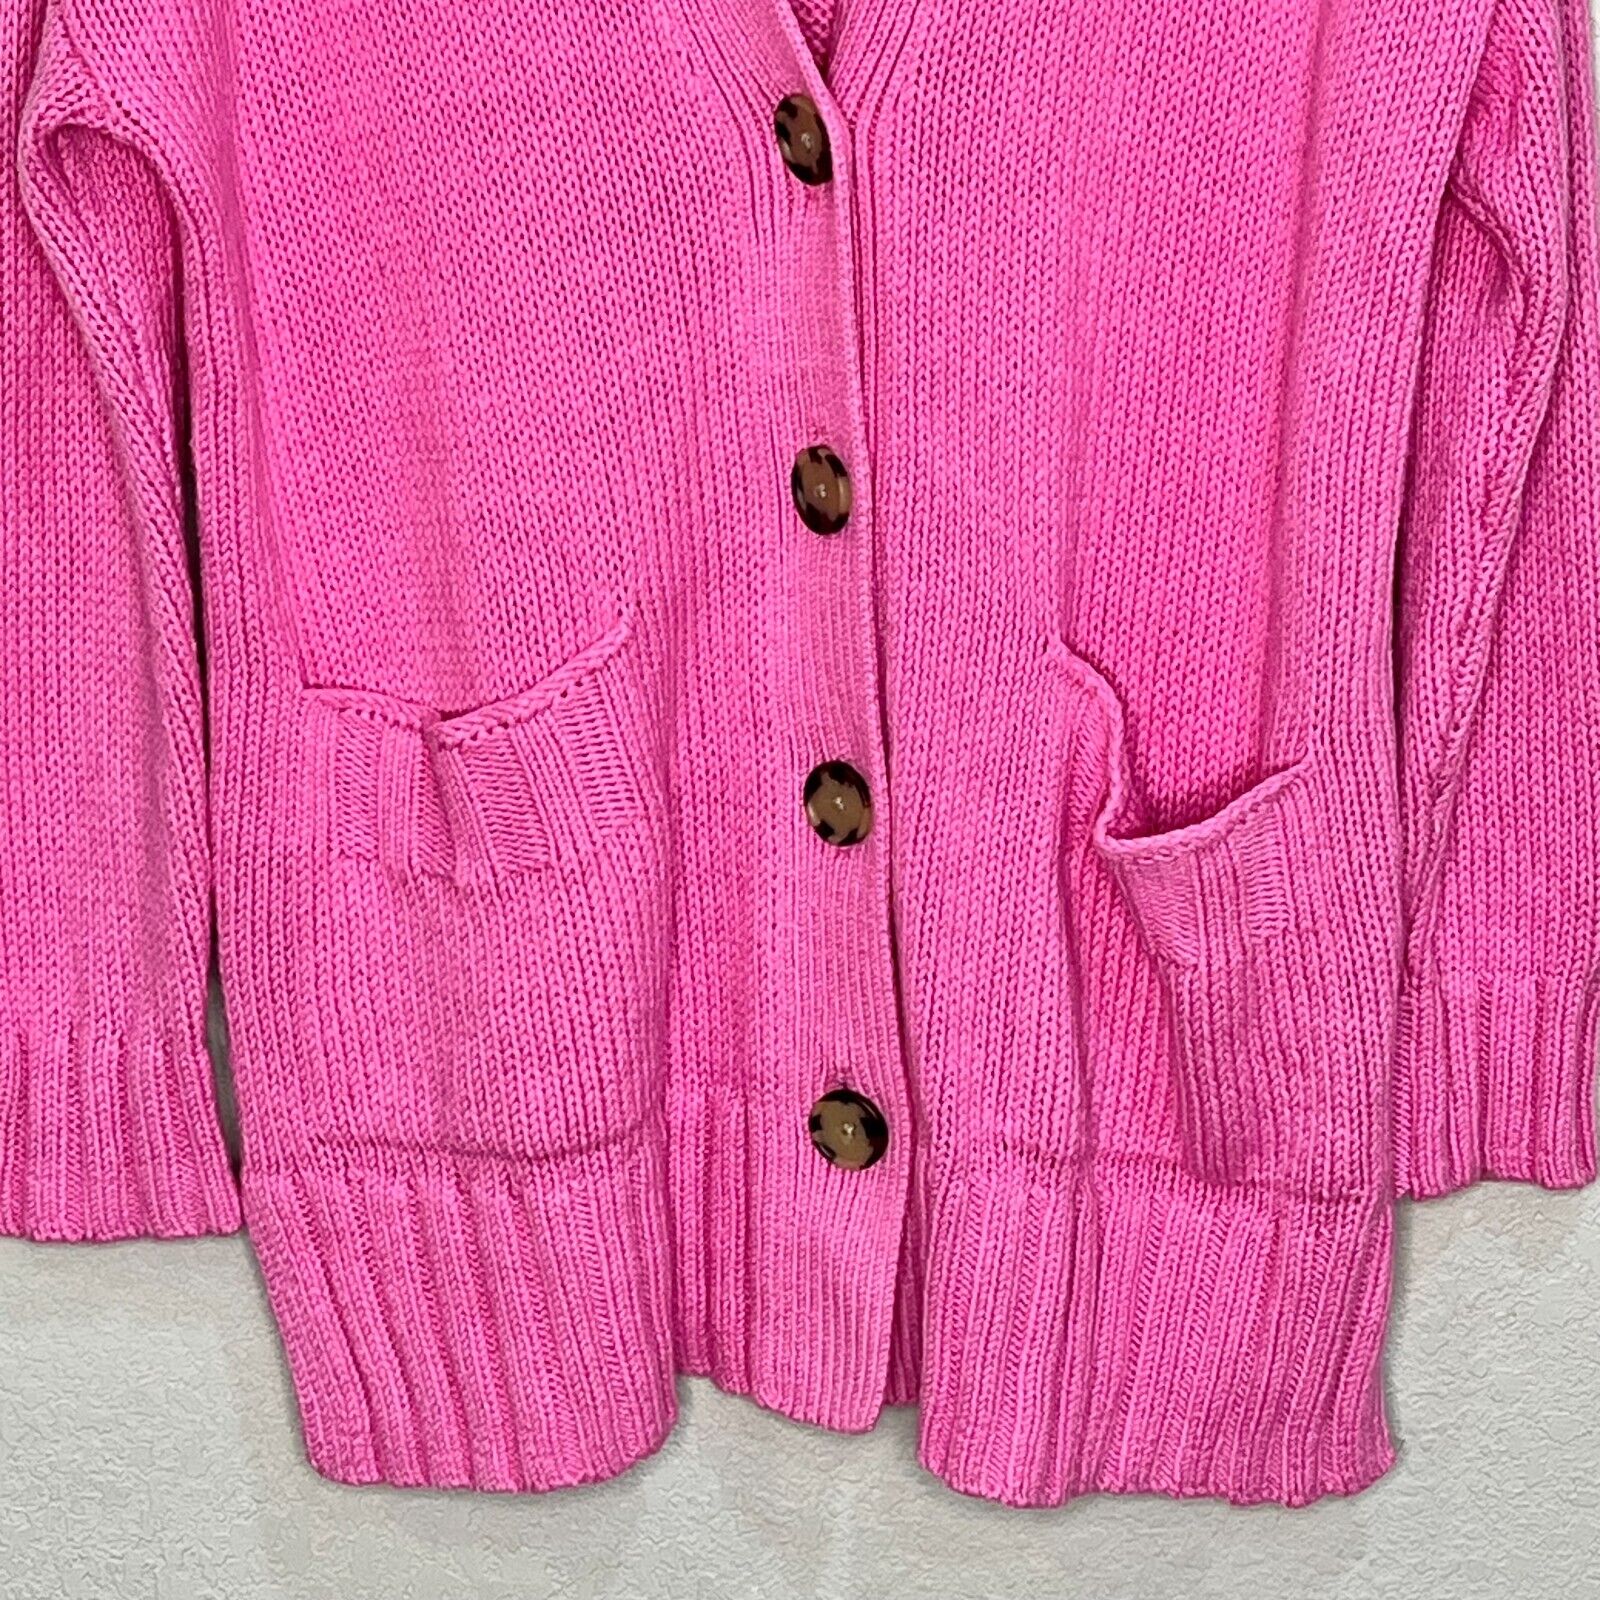 Loft Pink Grandpa Cardigan Size Small NEW $69.50